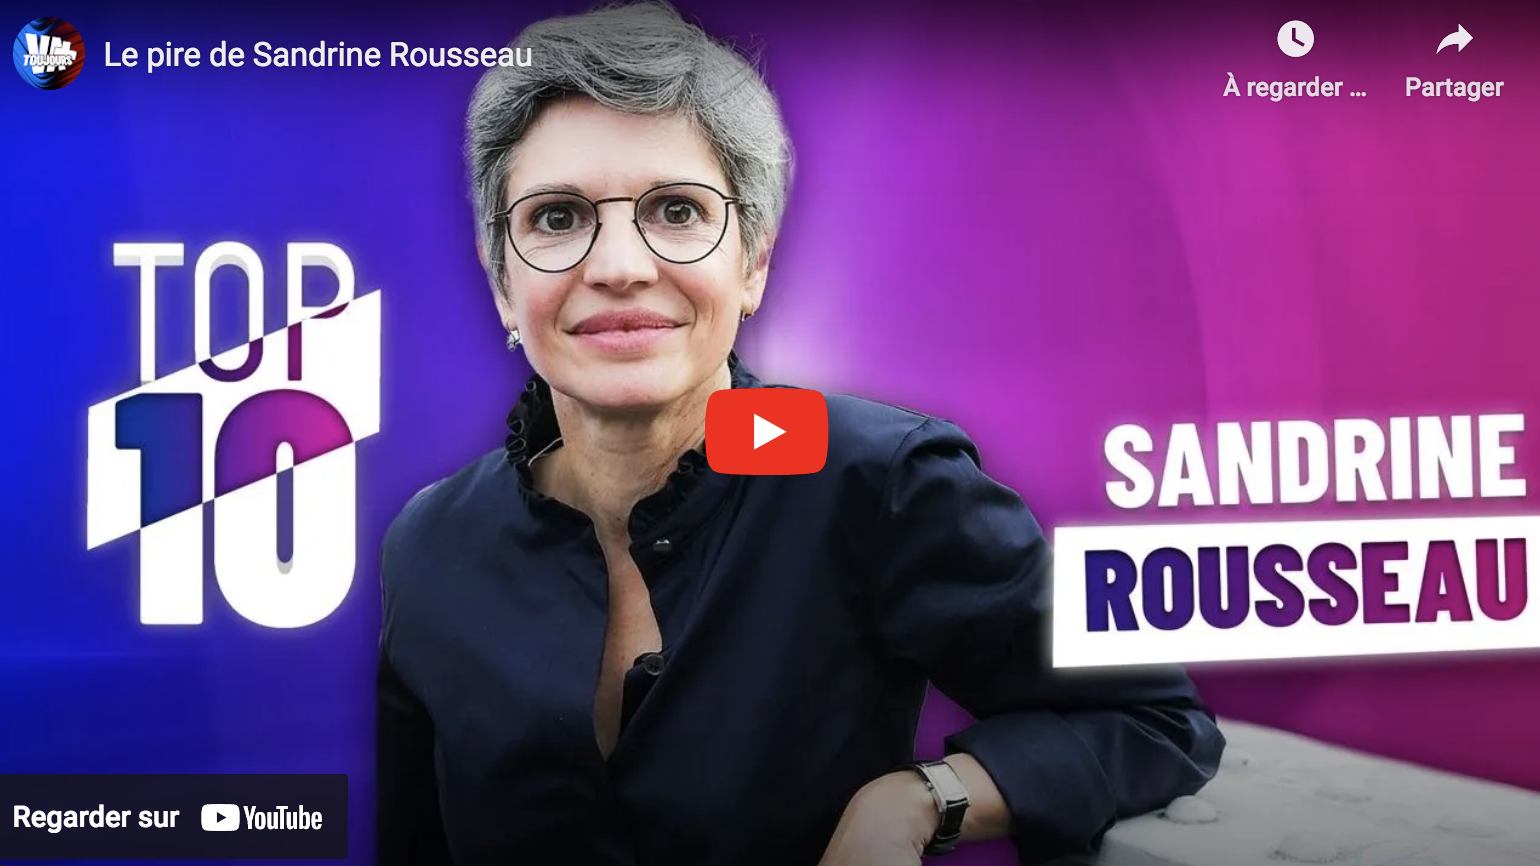 Le pire de Sandrine Rousseau (2)